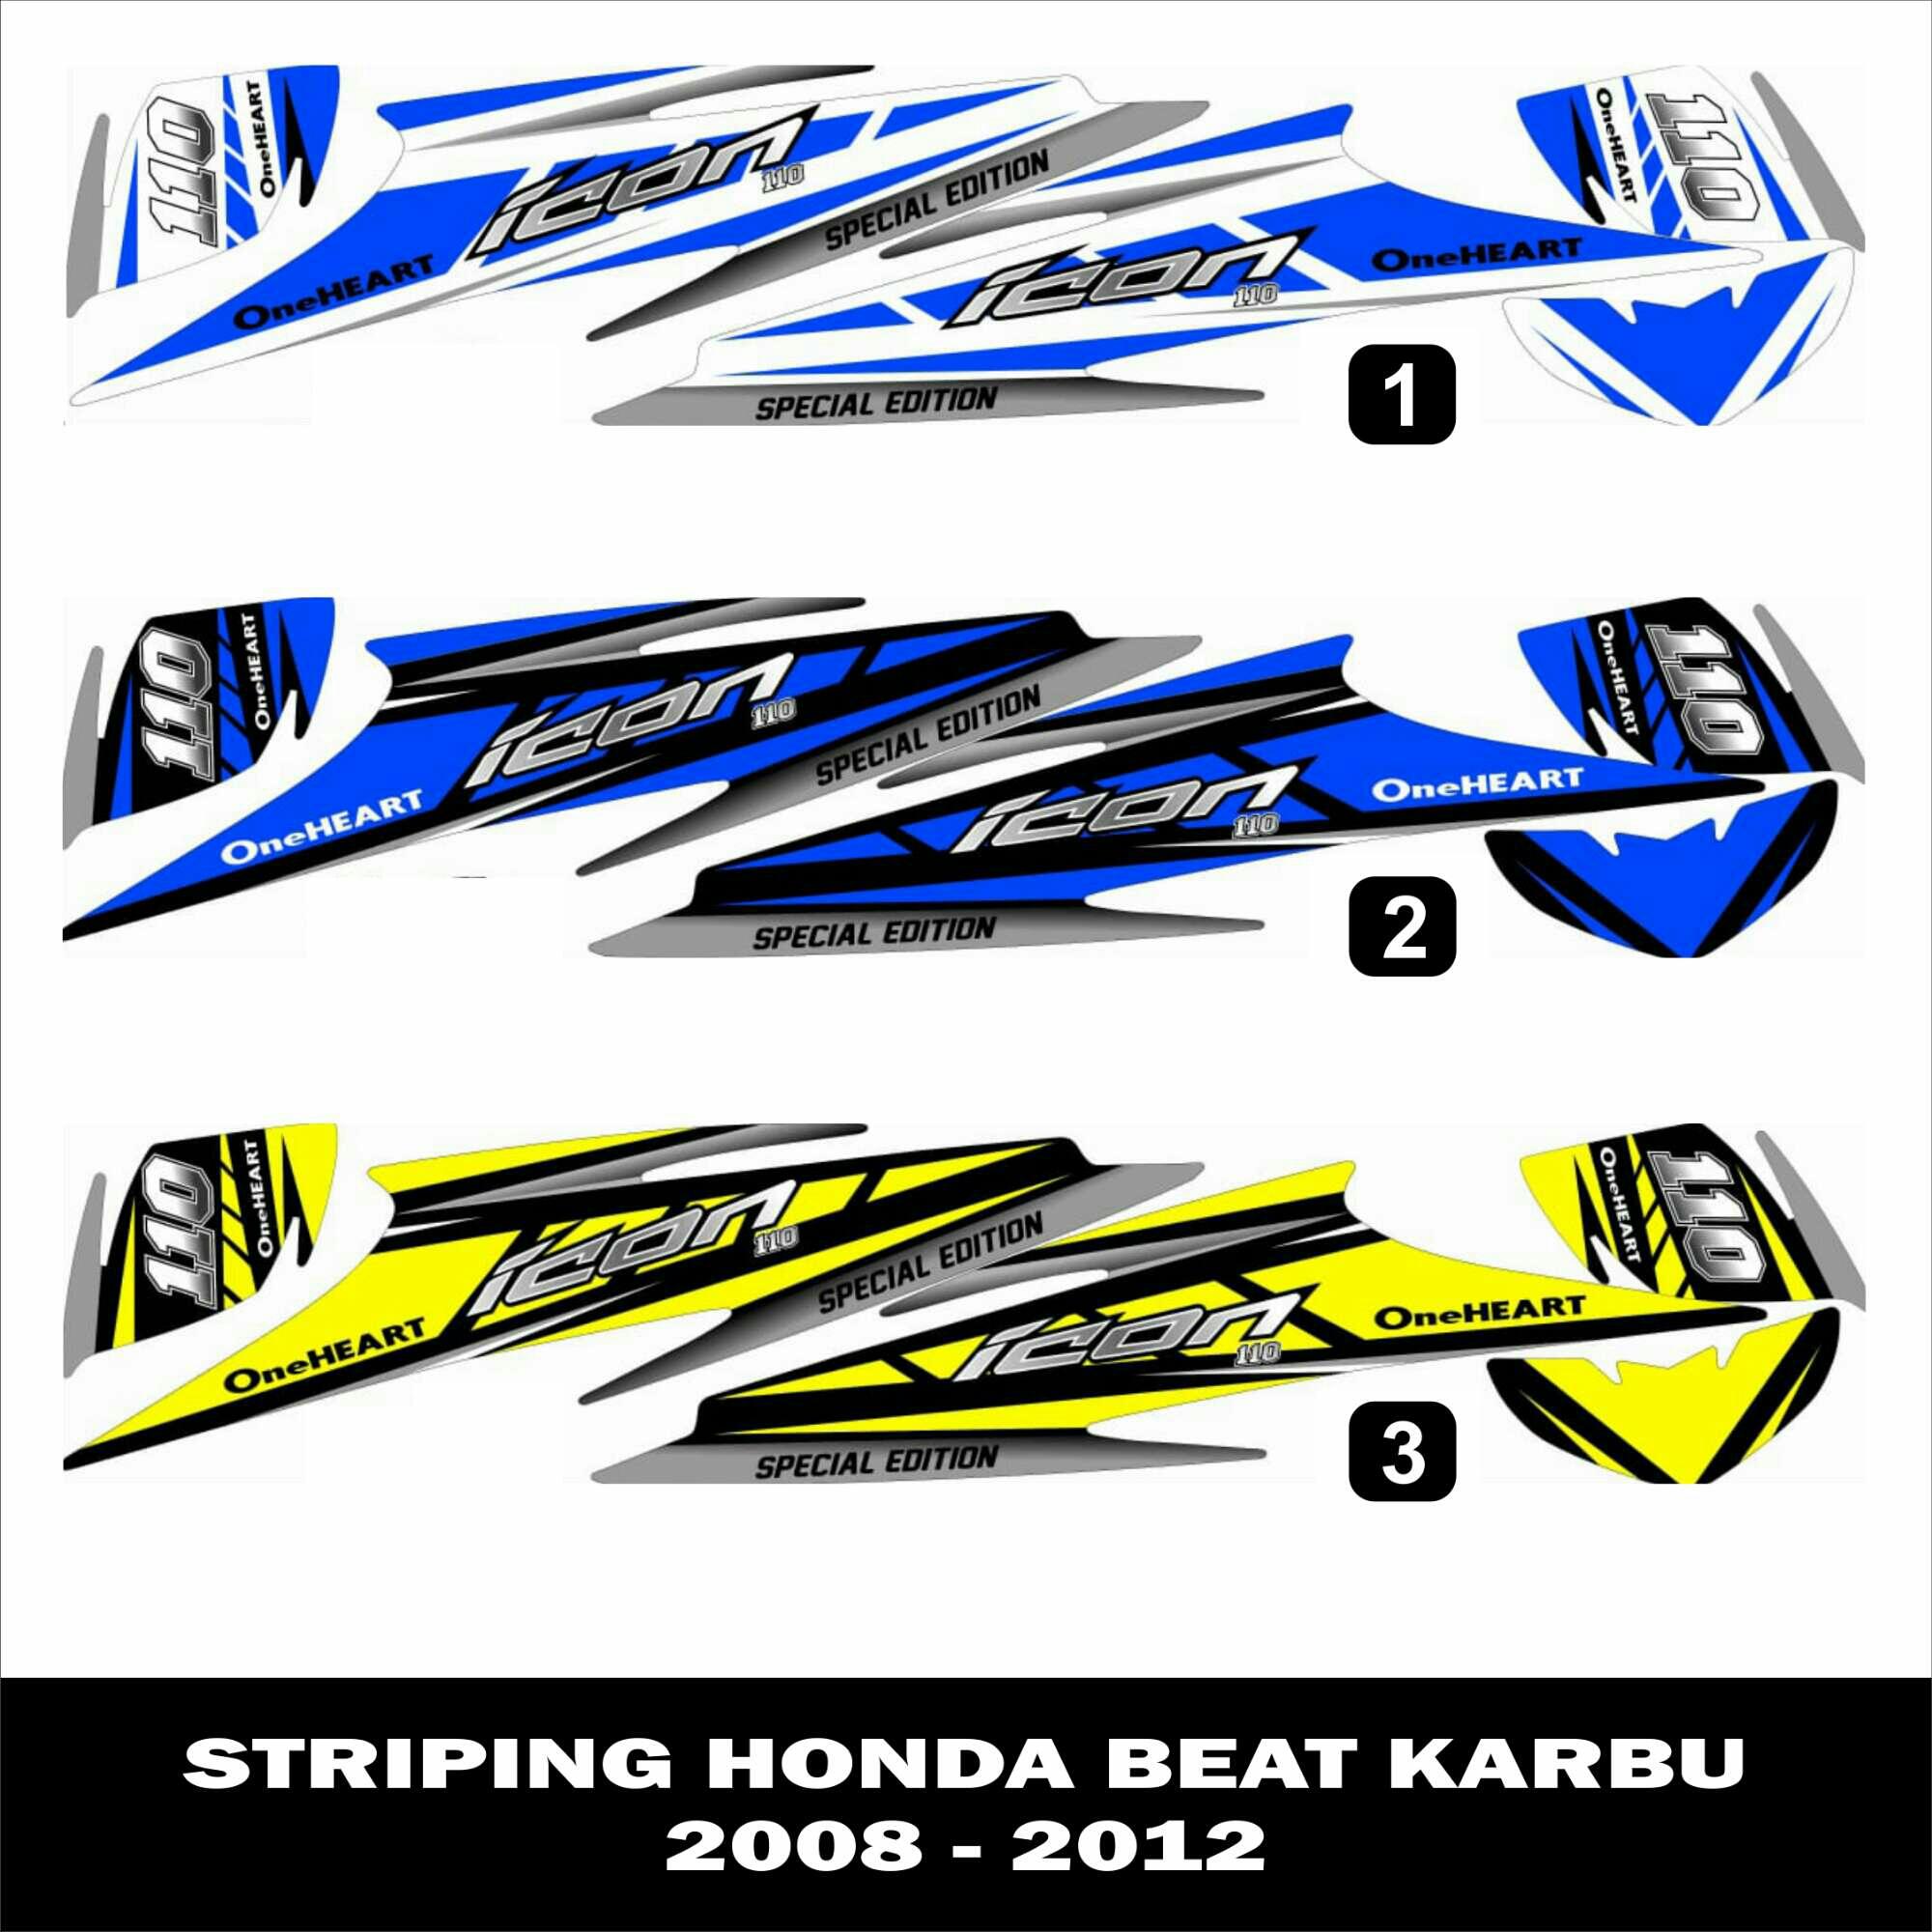 Striping Variasi  Honda Beat  2019  motorwallpapers org